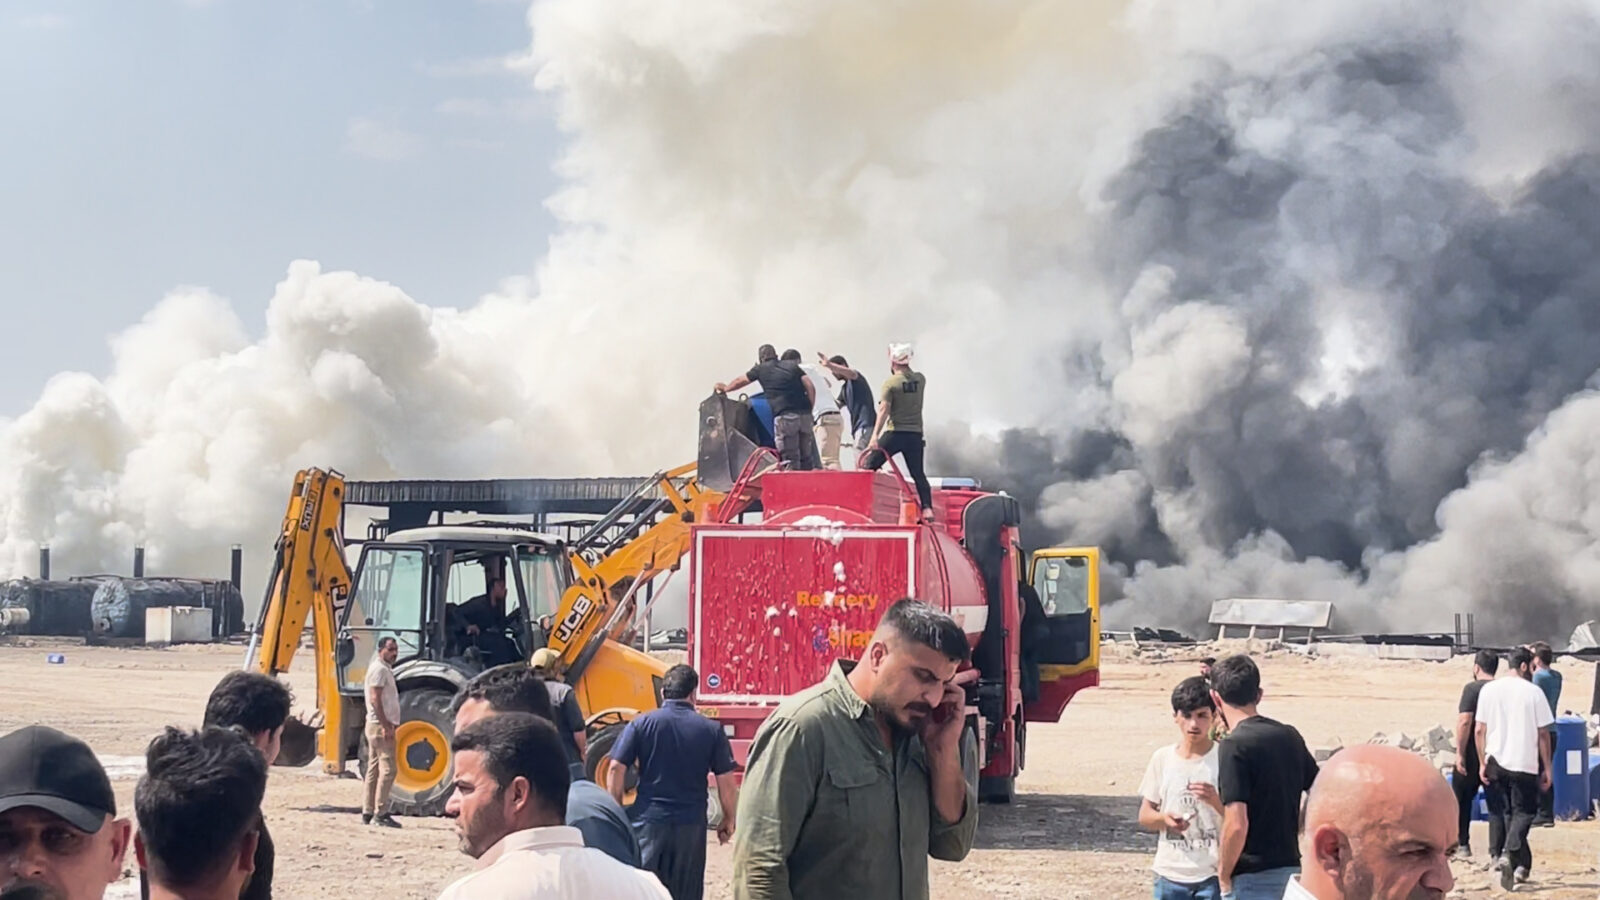 شاهد المصفى بعد إخماد النيران.. 24 مصابا من منتسبي الدفاع المدني في أربيل